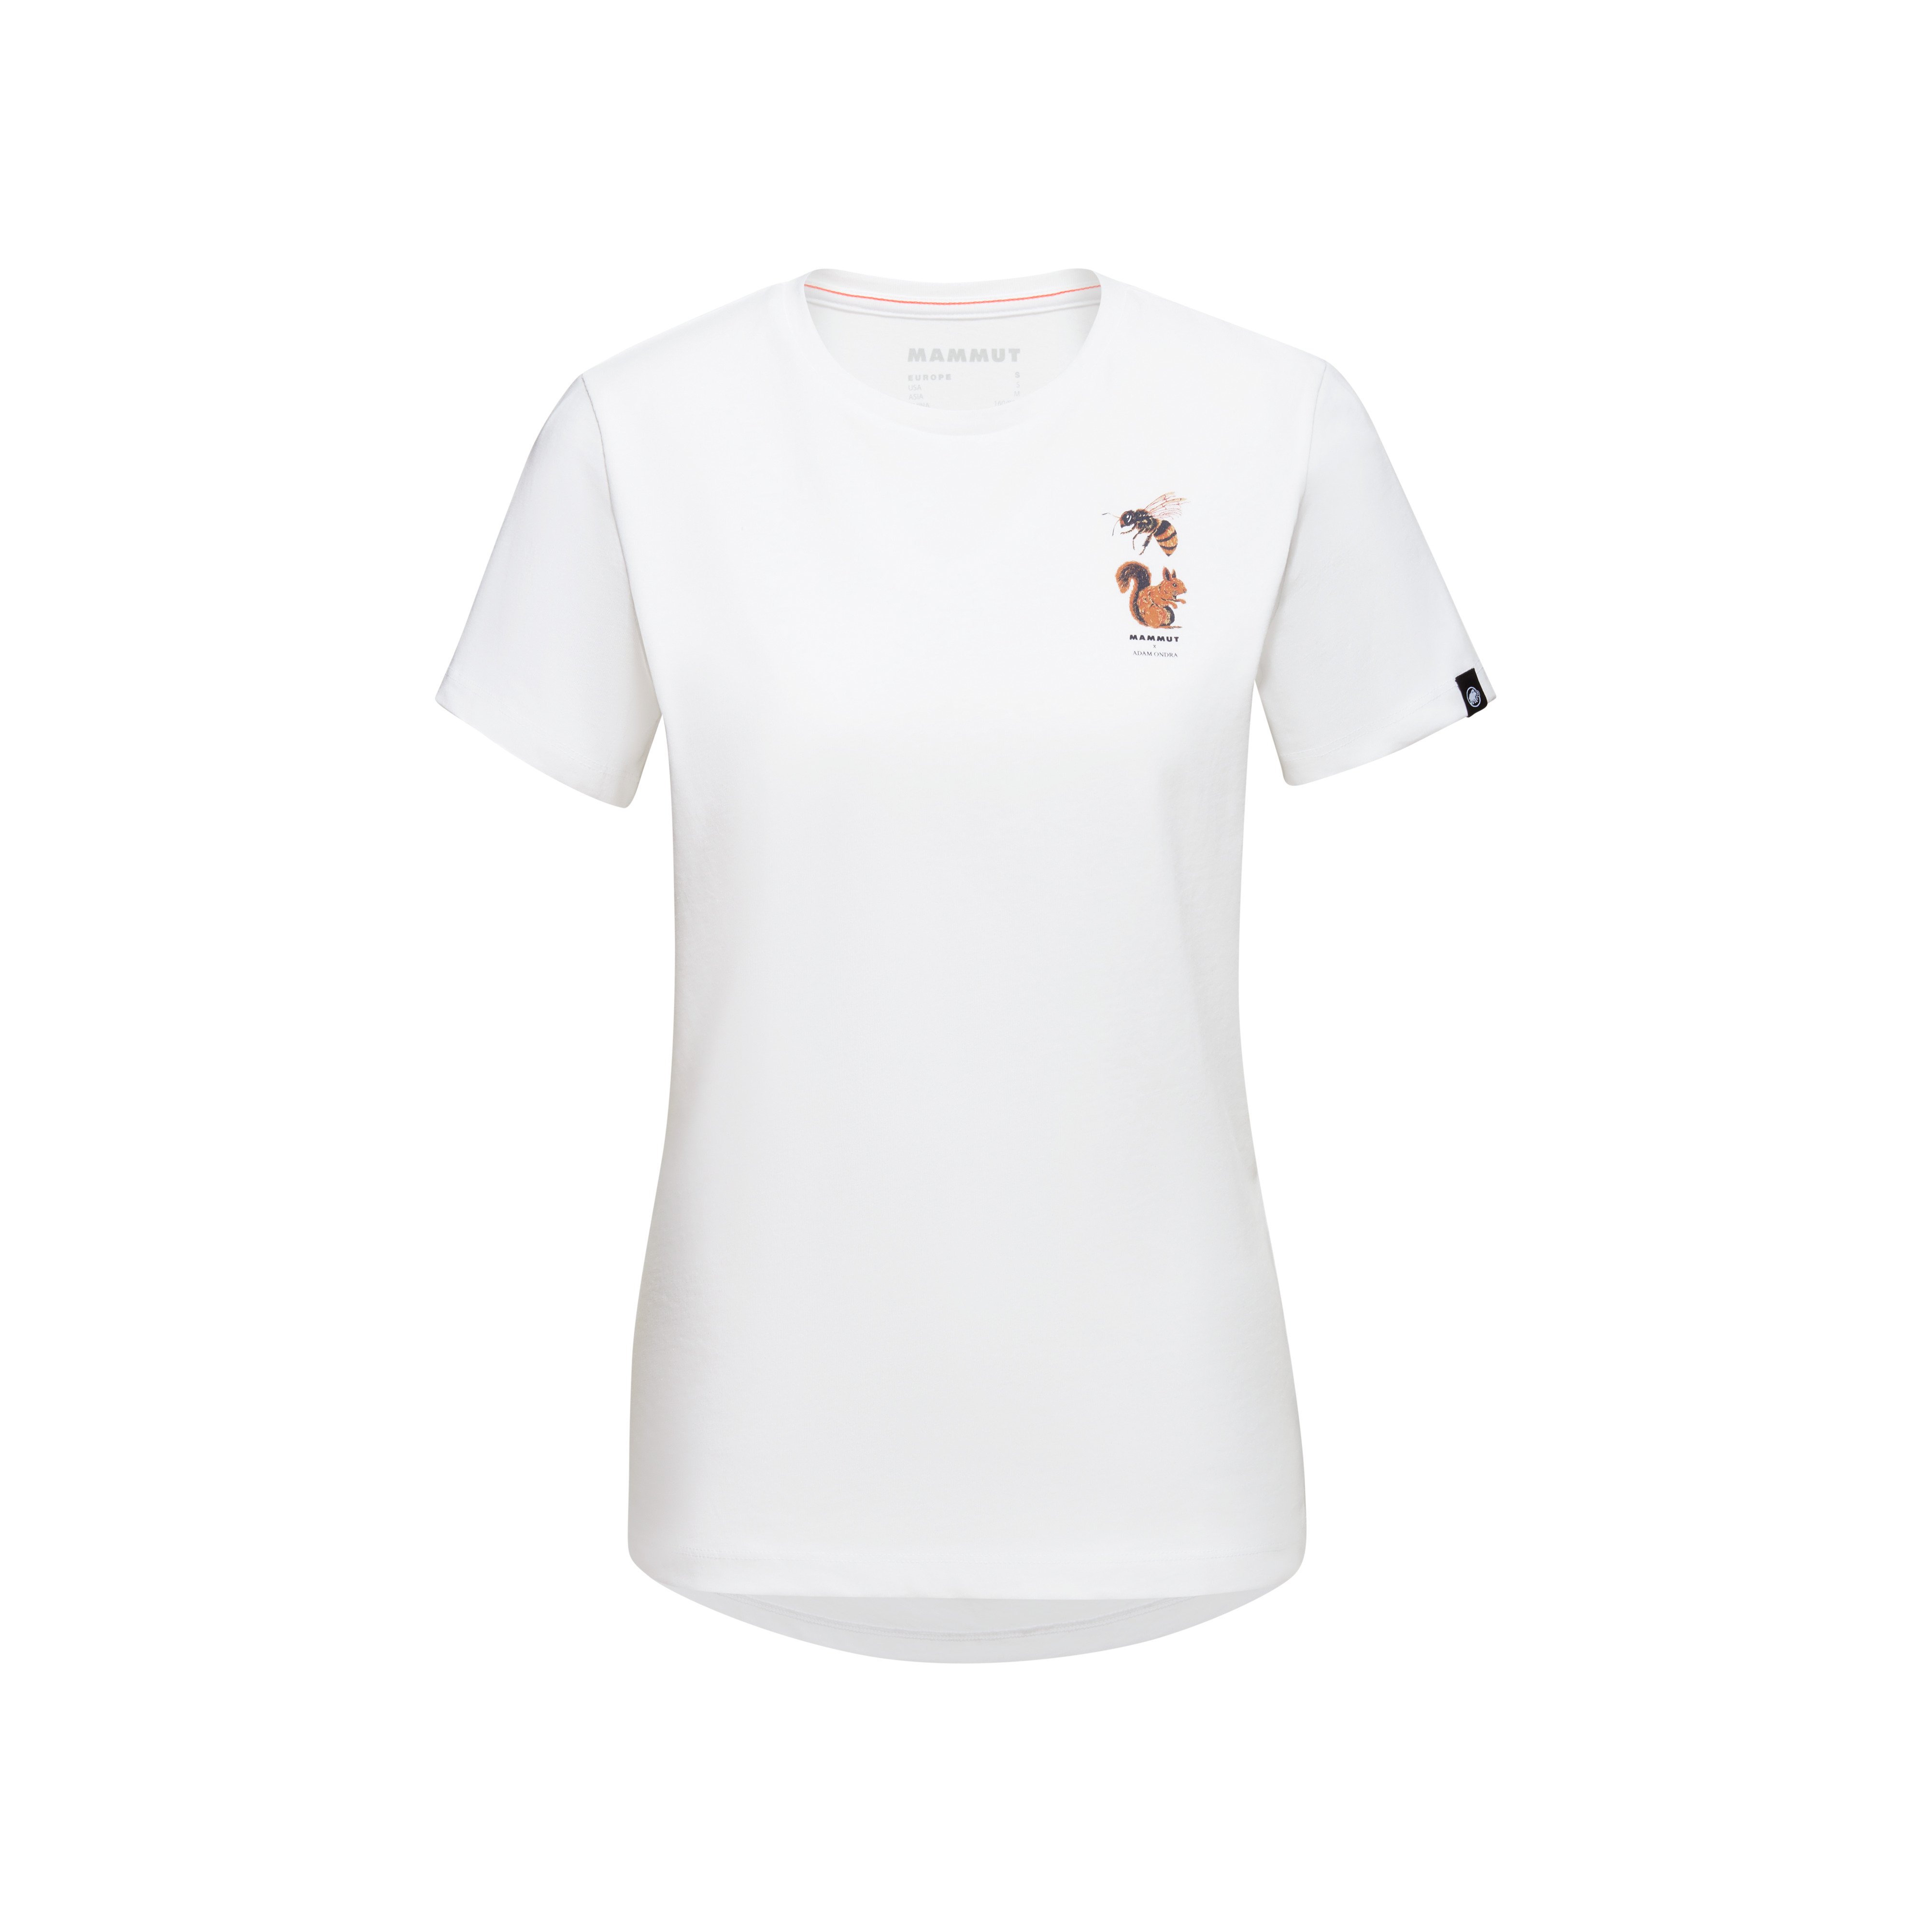 Mammut x Adam Ondra T-Shirt Women - white, XL product image